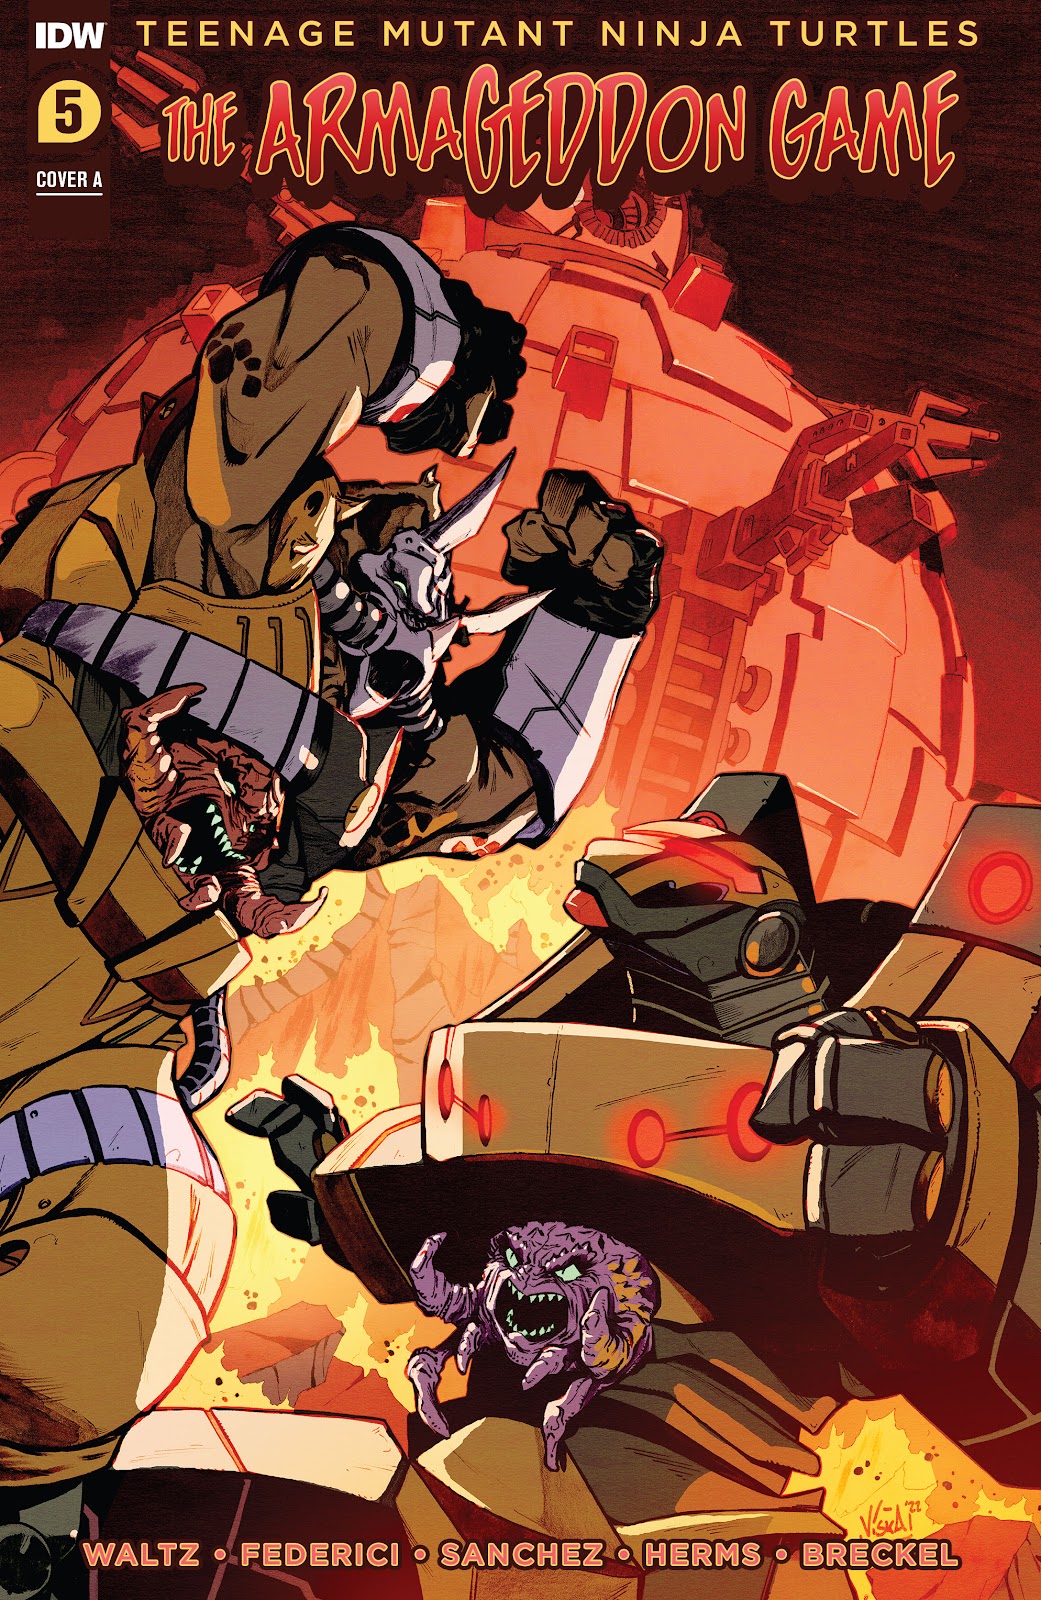 Teenage Mutant Ninja Turtles: The Armageddon Game issue 5 - Page 1